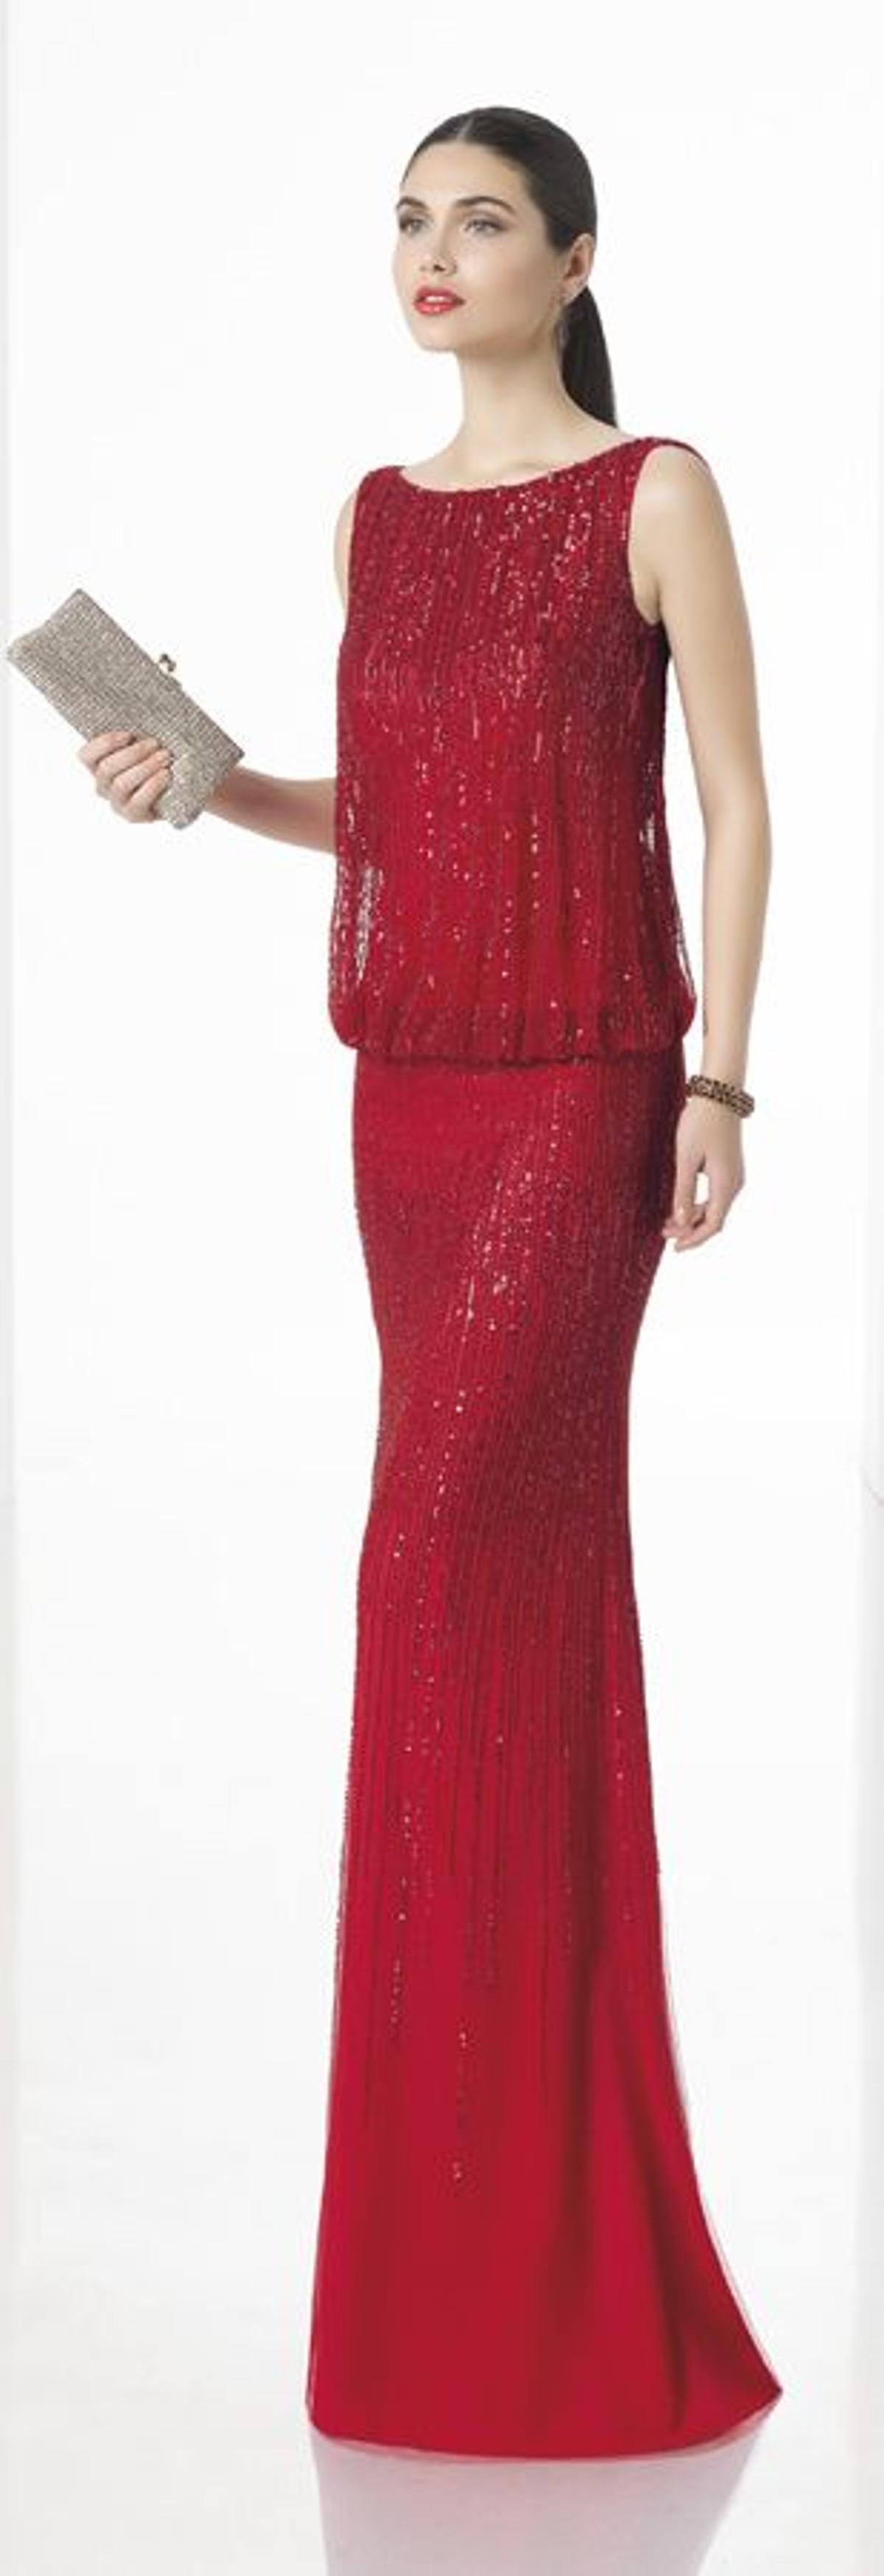 Vestidos rojos de fiesta 2017: modelo ablusonado bordado con pedrería